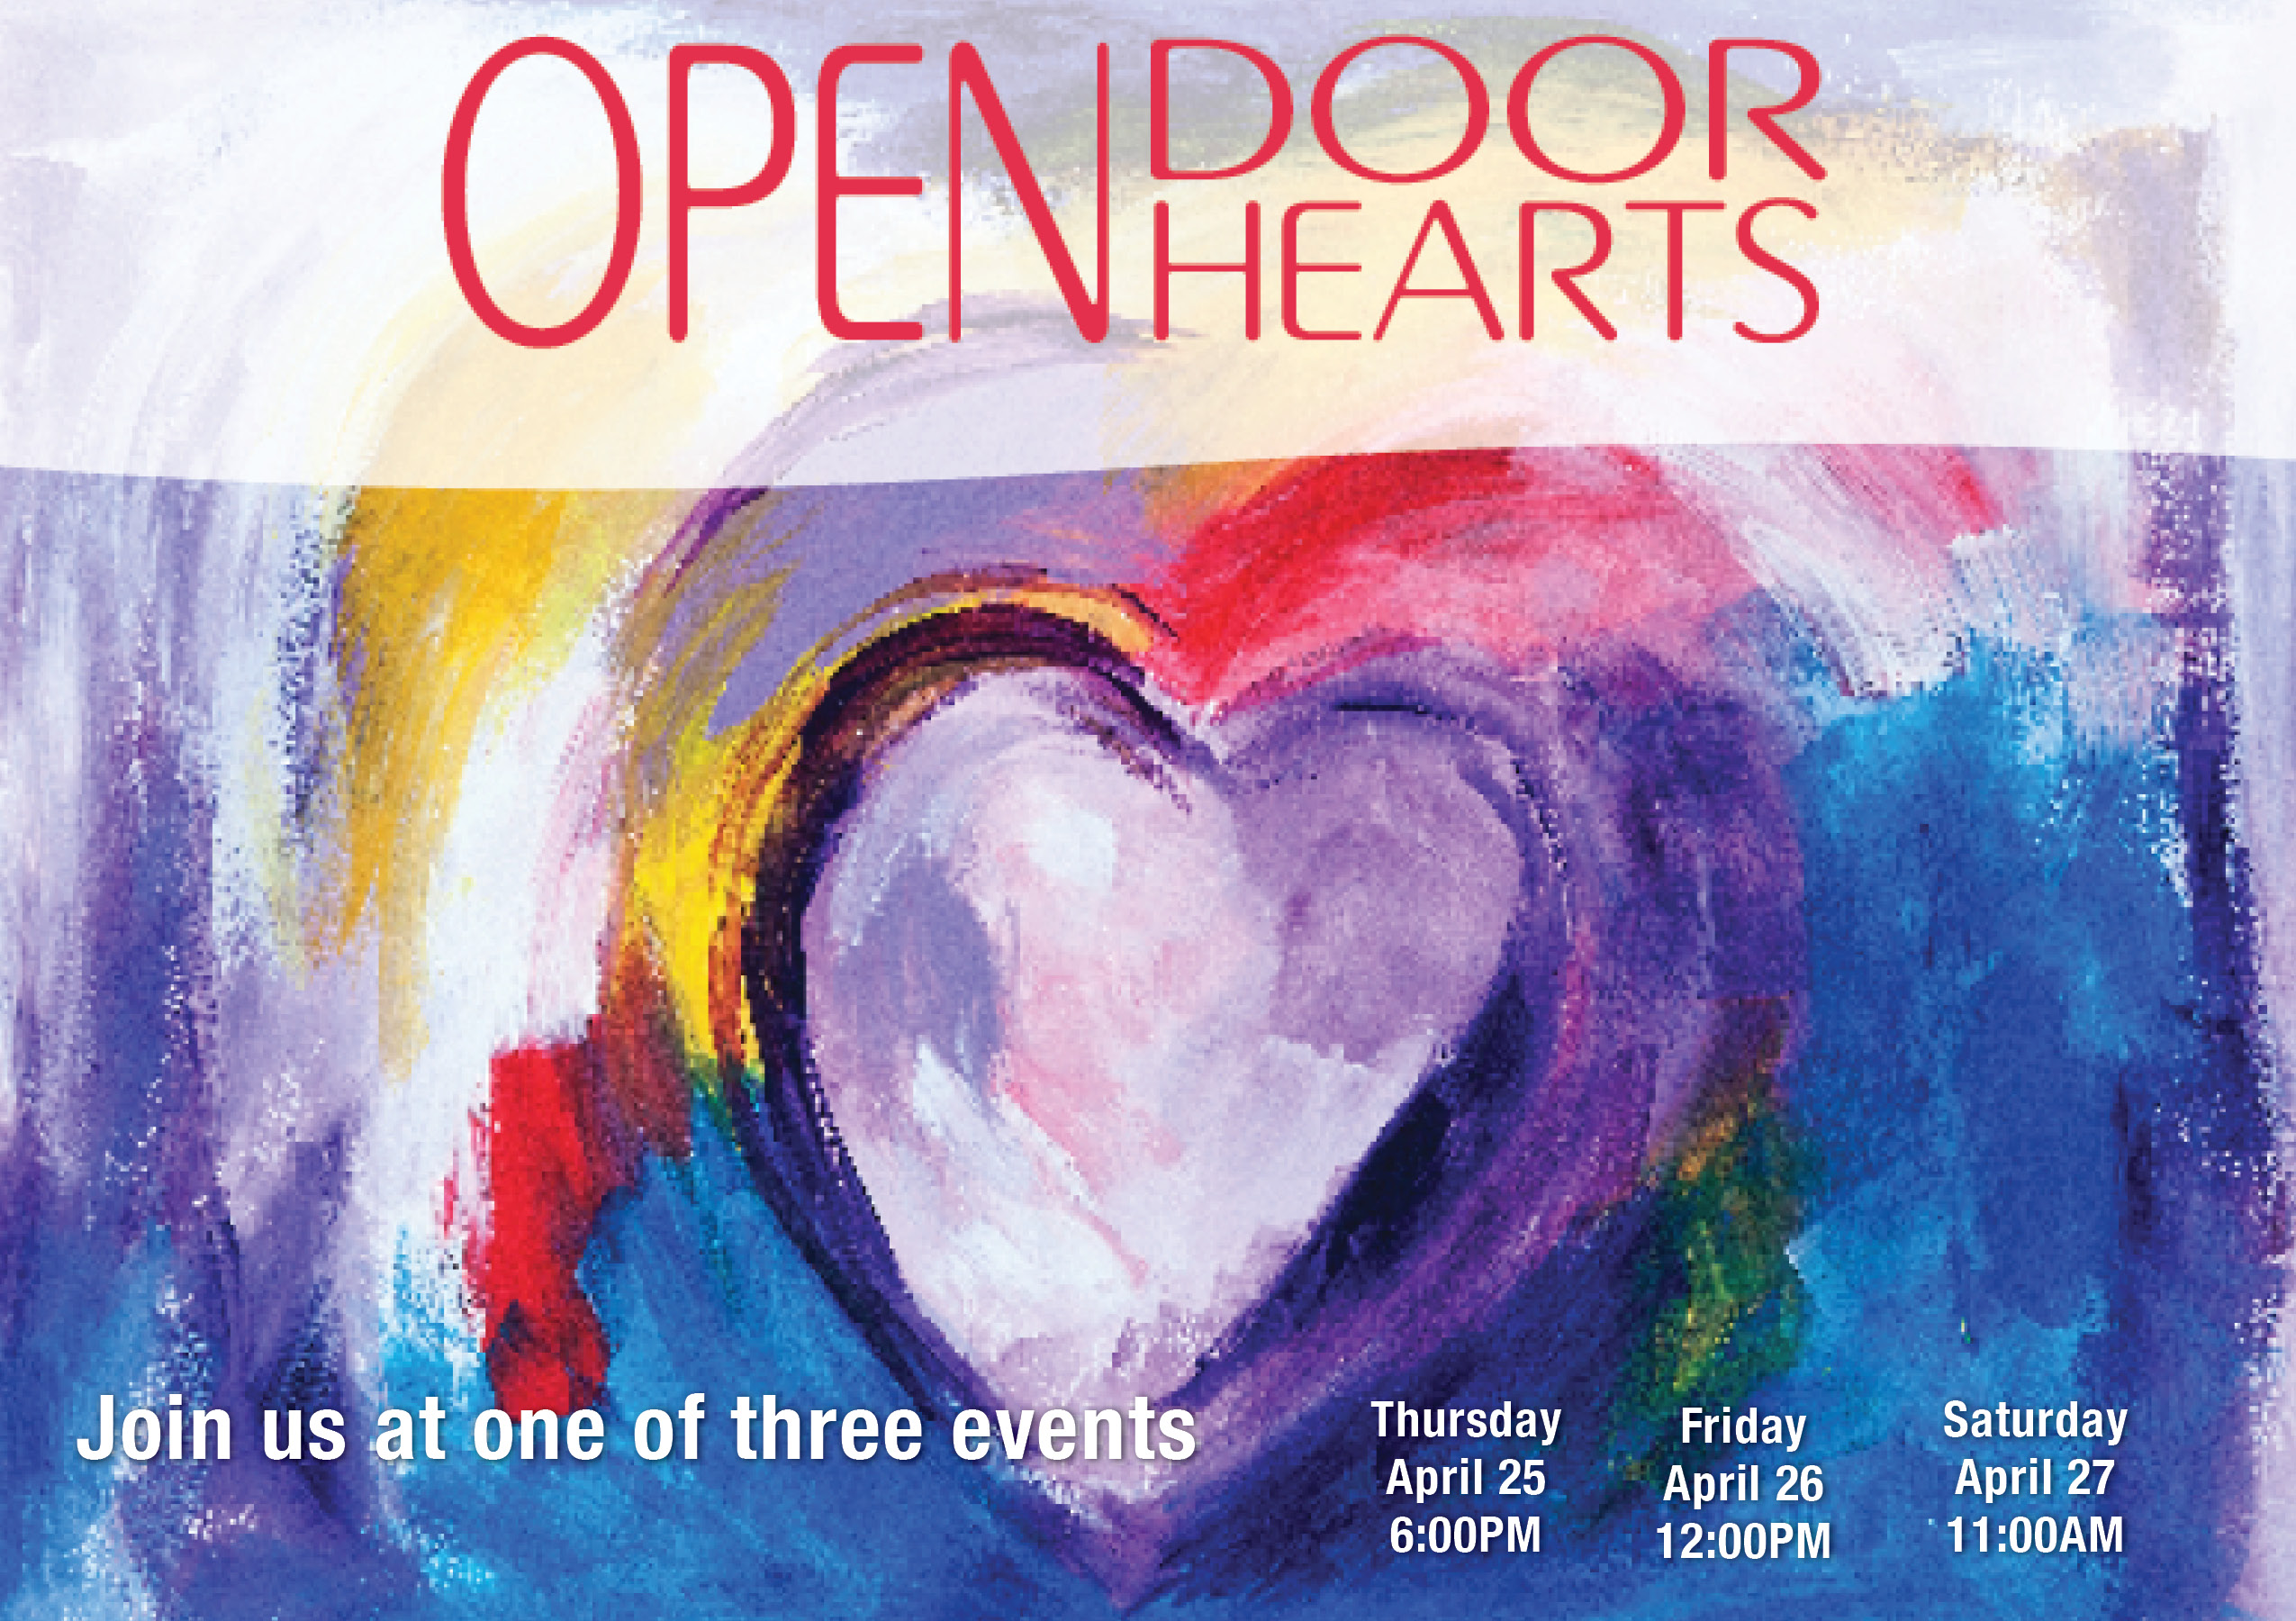 Open Door Open Hearts